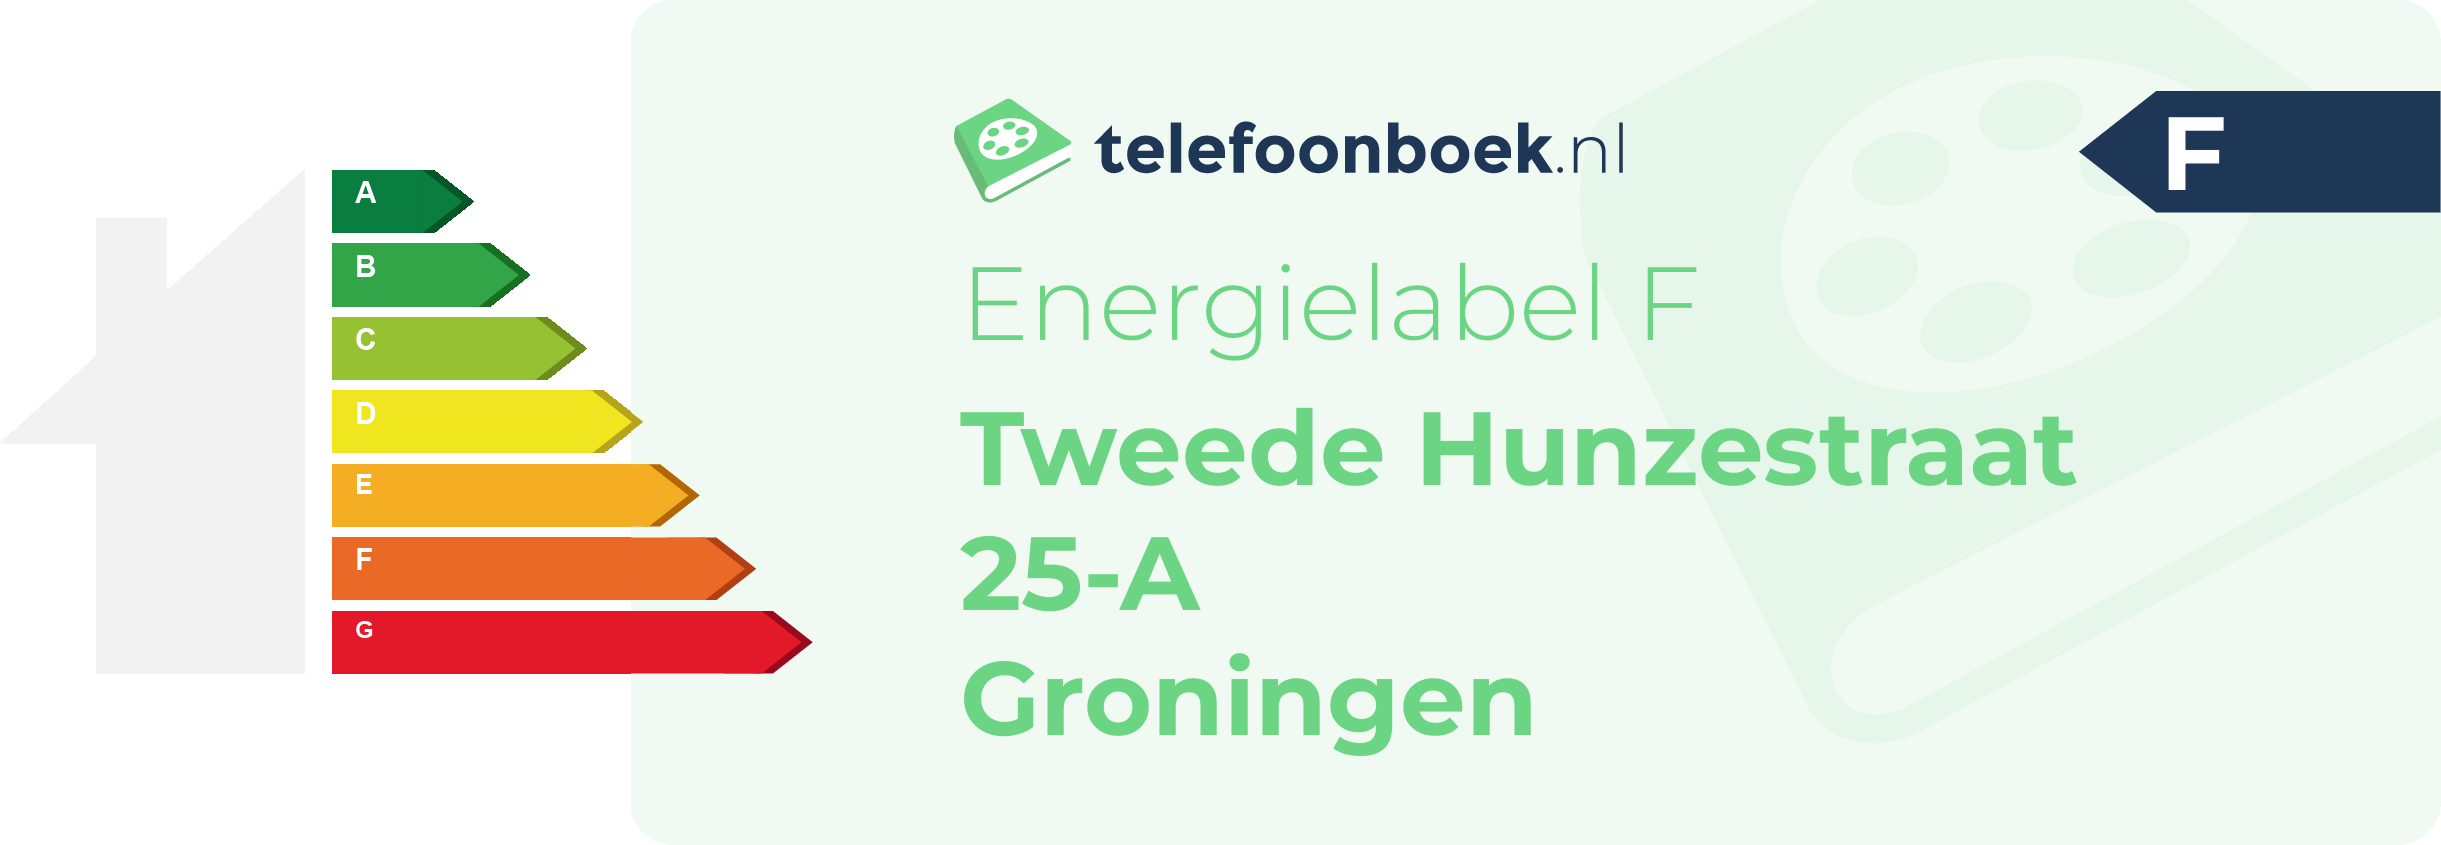 Energielabel Tweede Hunzestraat 25-A Groningen